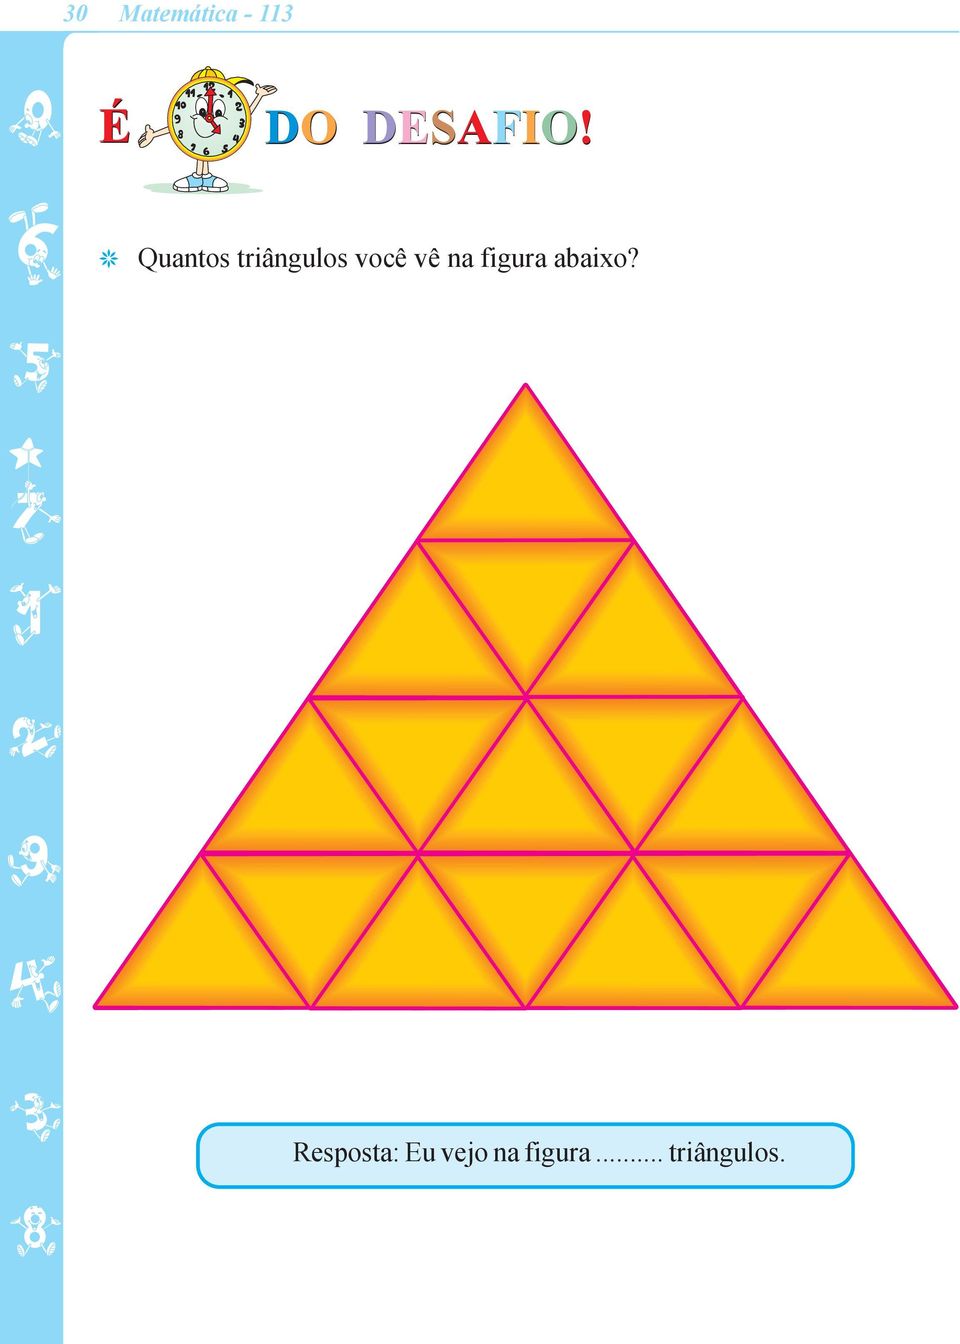 Quantos triângulos você vê na